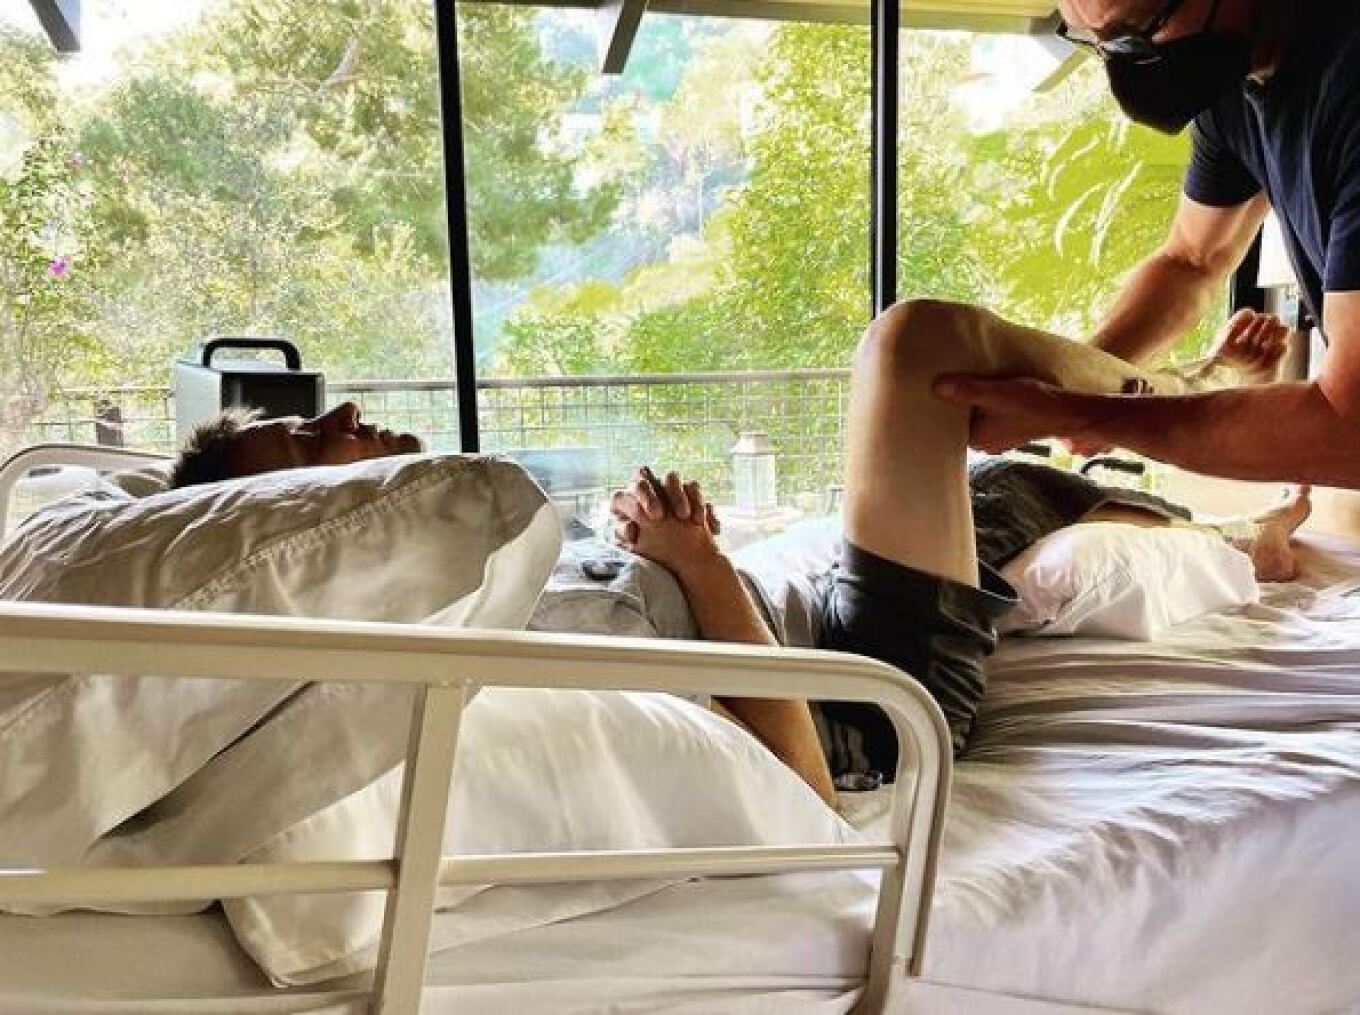 Τζέρεμι Ρένερ: 30 σπασμένα οστά από το ατύχημα με το εκχιονιστικό – Η ανάρτηση του στο Instagram